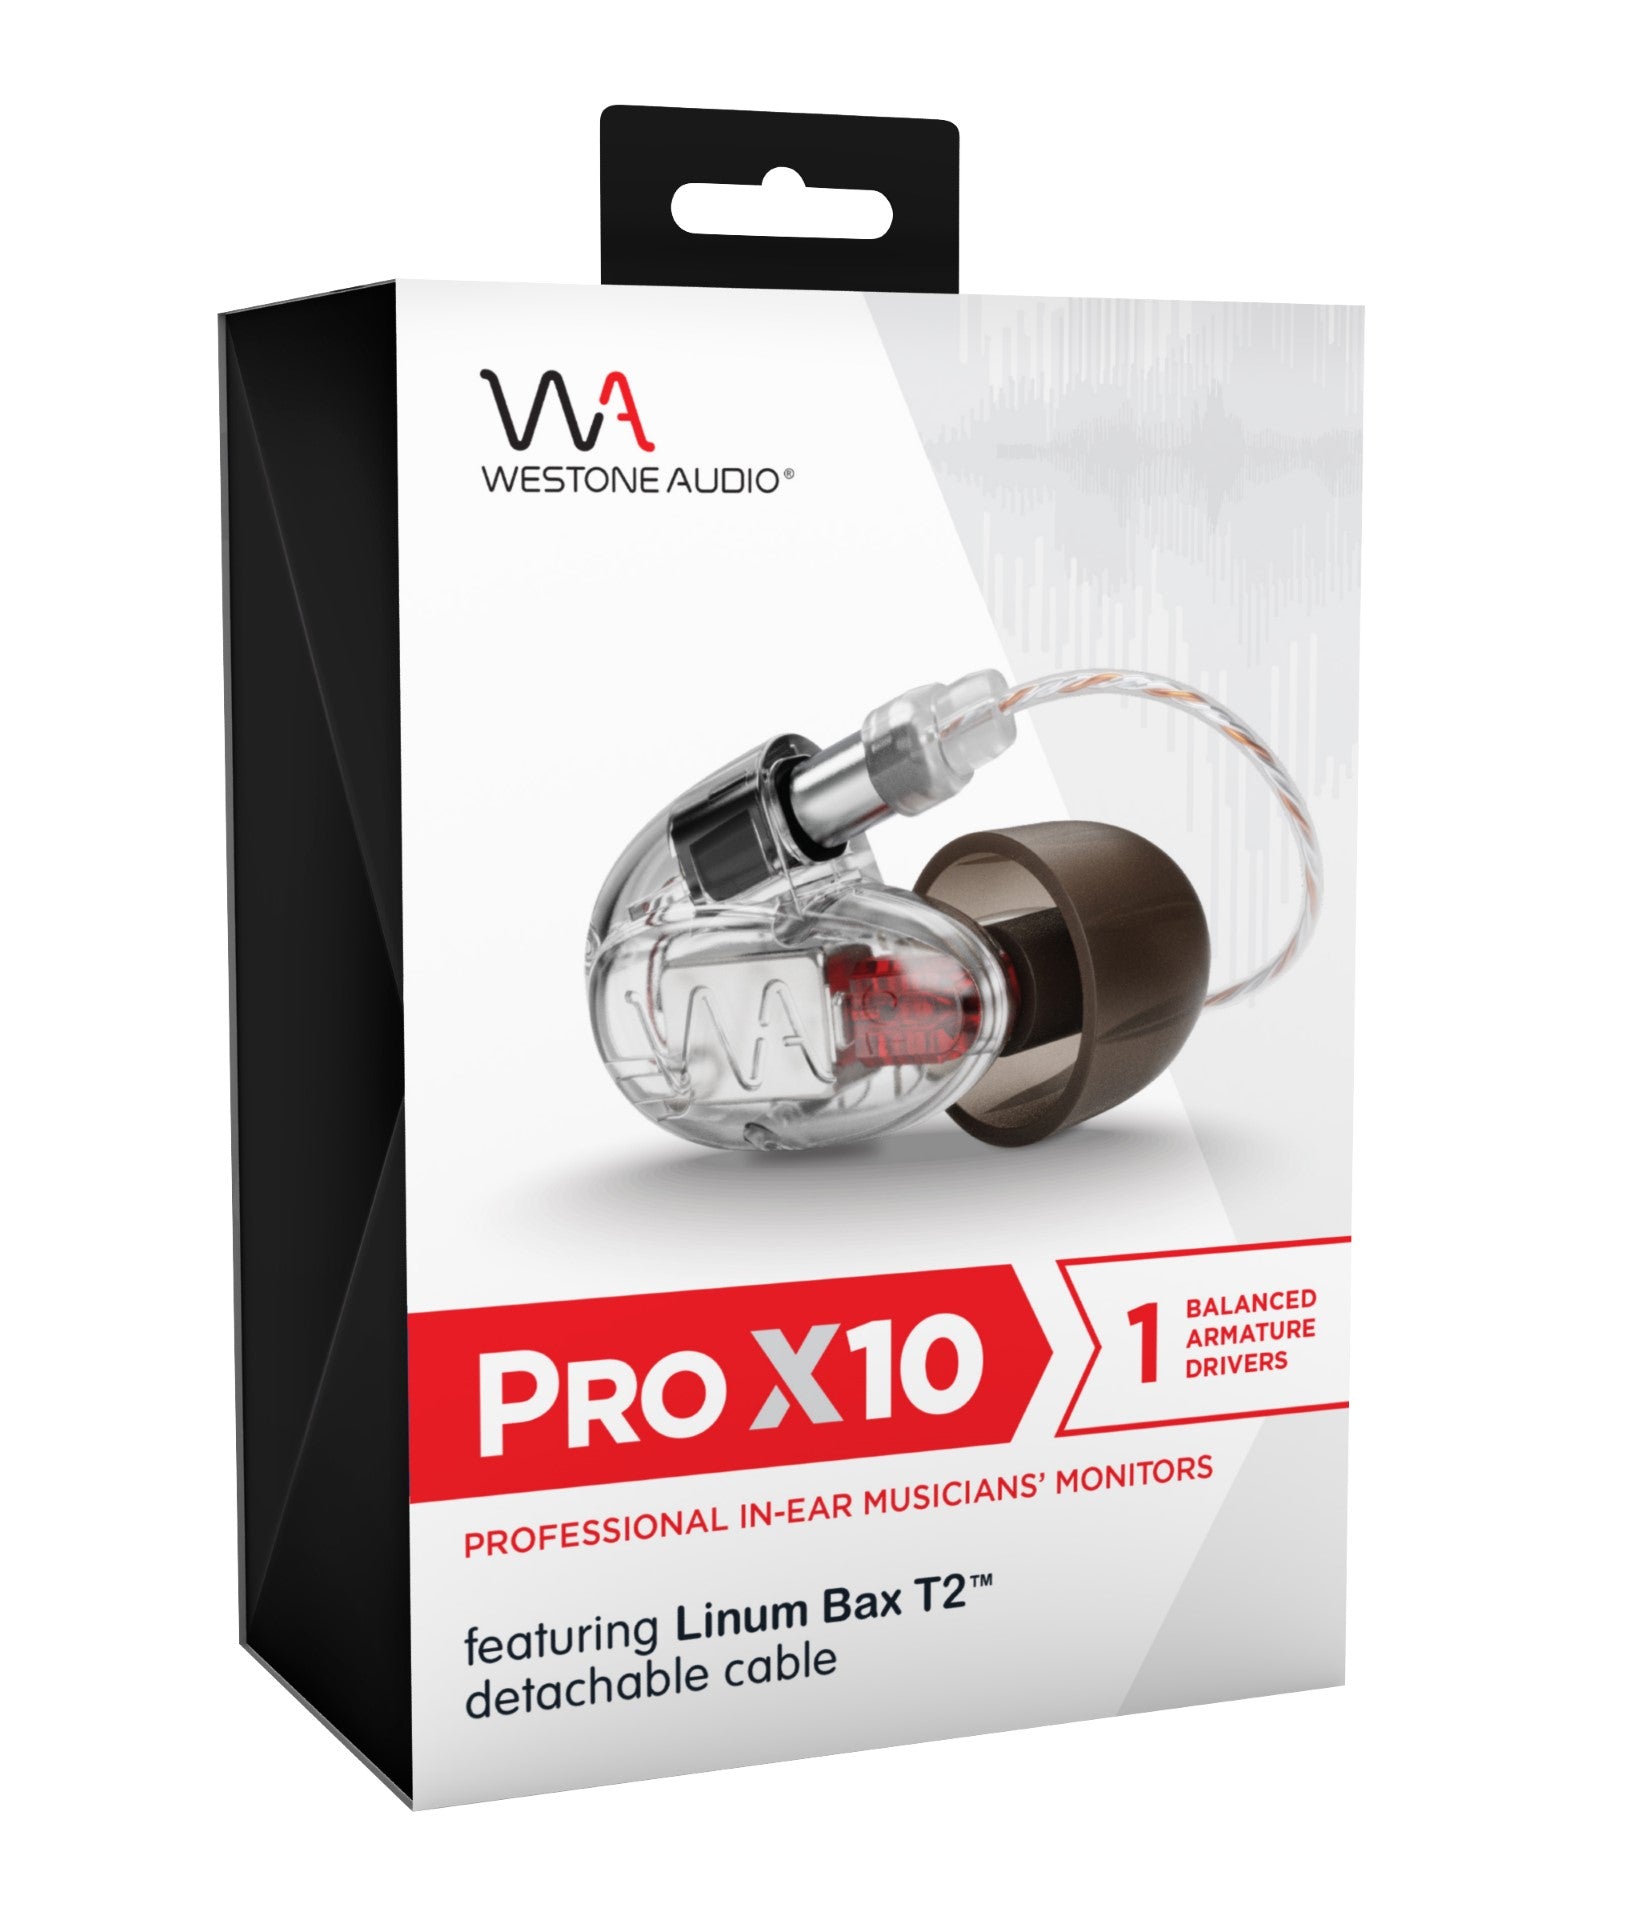 Westone Audio Pro X10 - Professional Single Driver IEM Earphones with Linum BaX T2 Detachable Cable